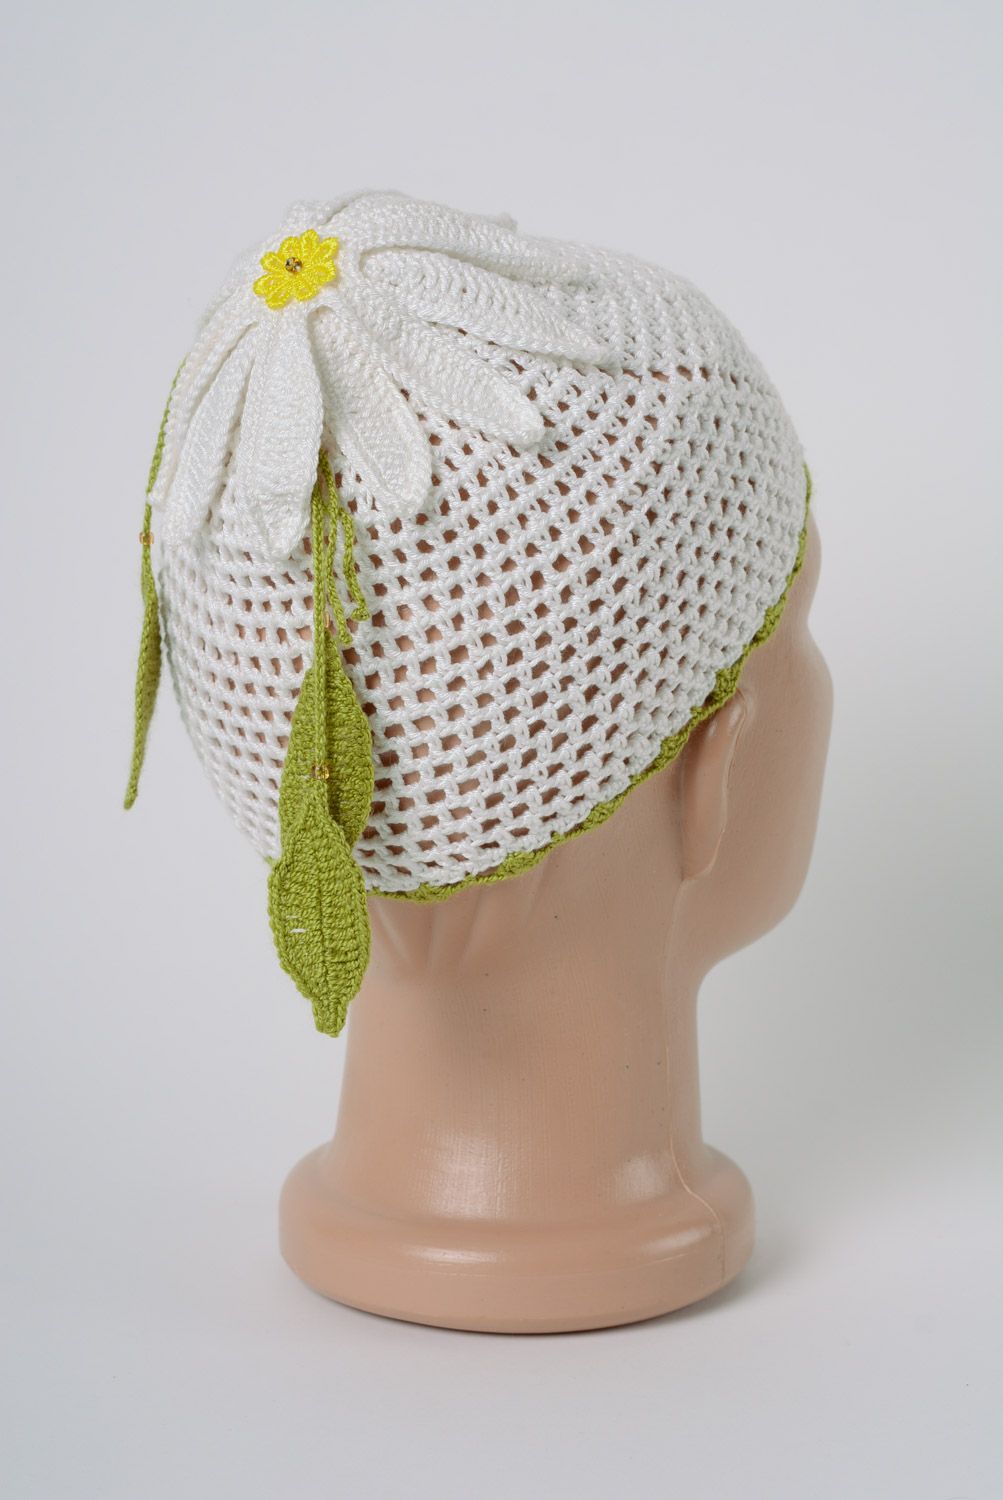 Детская шапка вязанная крючком из натуральной нити ажурная белая с цветком ручной работы весенняя фото 3